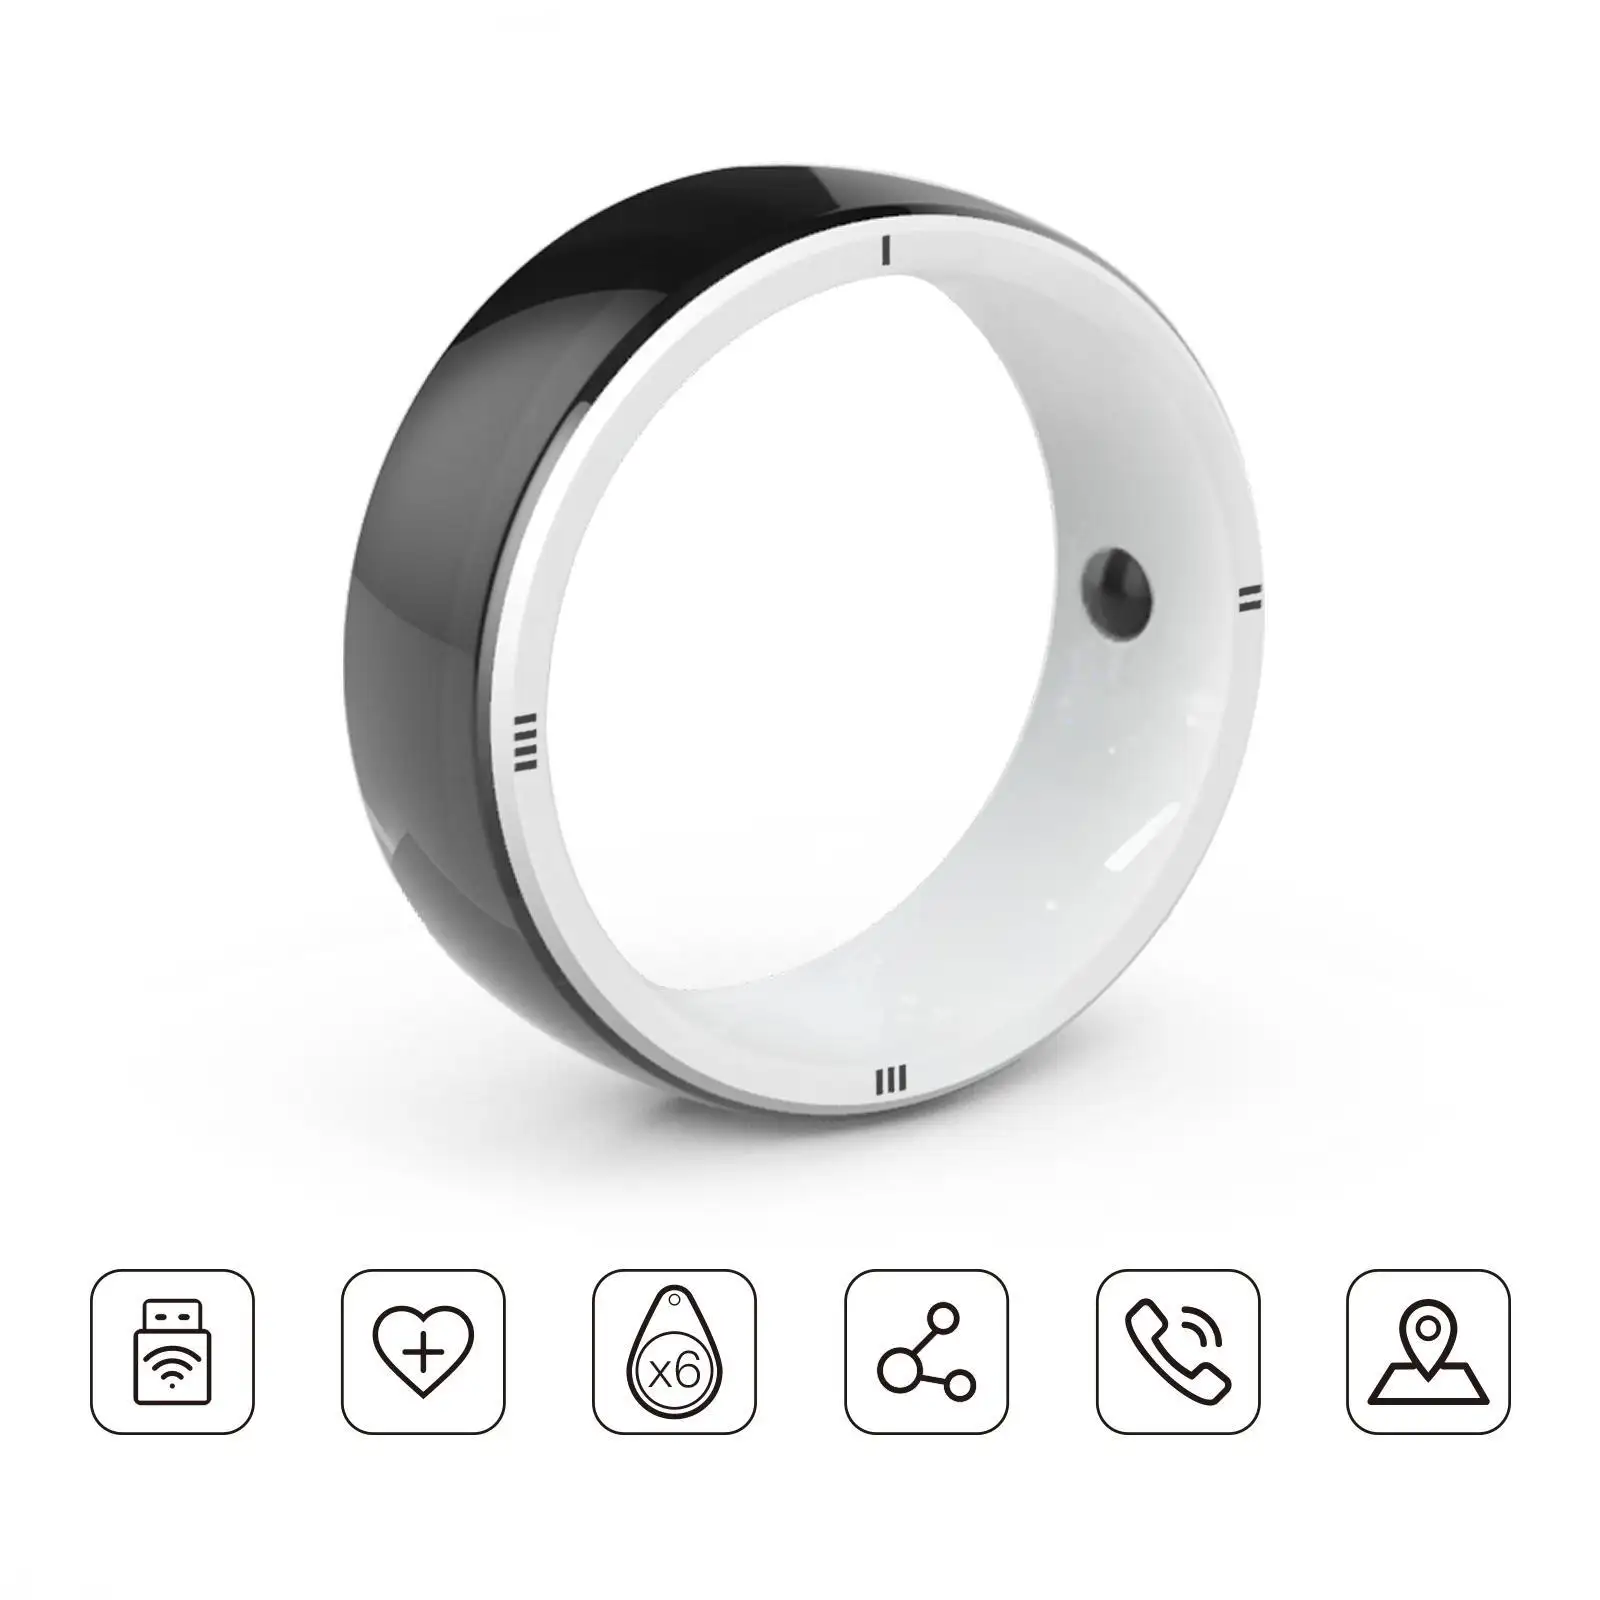 JAKCOM R5 смарт-кольцо новое смарт-кольцо поступление как офисная серверная стойка vivibright gp80 камера, которая выглядит как пленка Лучший чехол для ПК